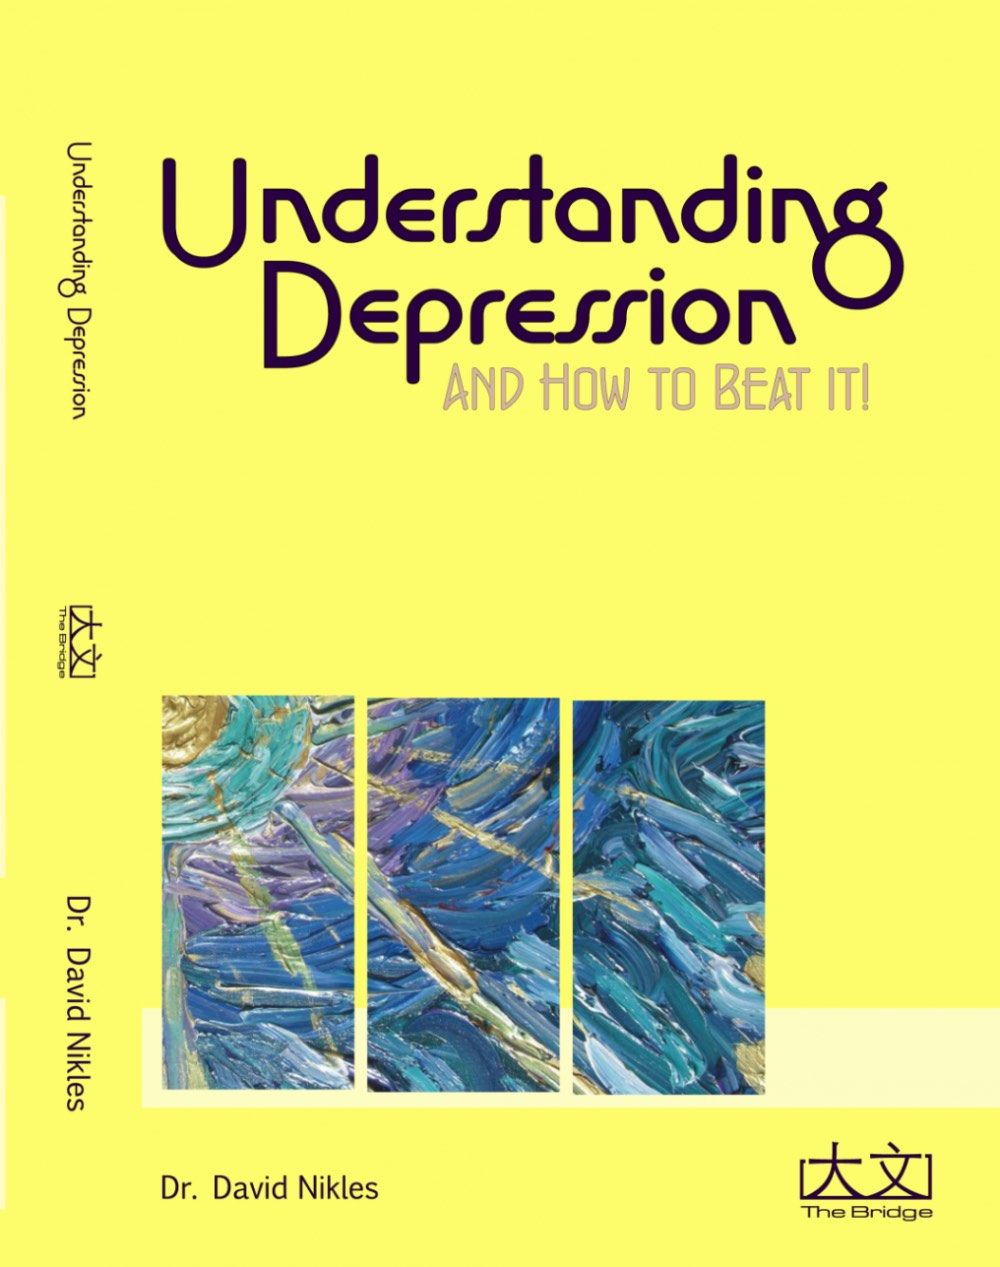 English Depression Book Cover 